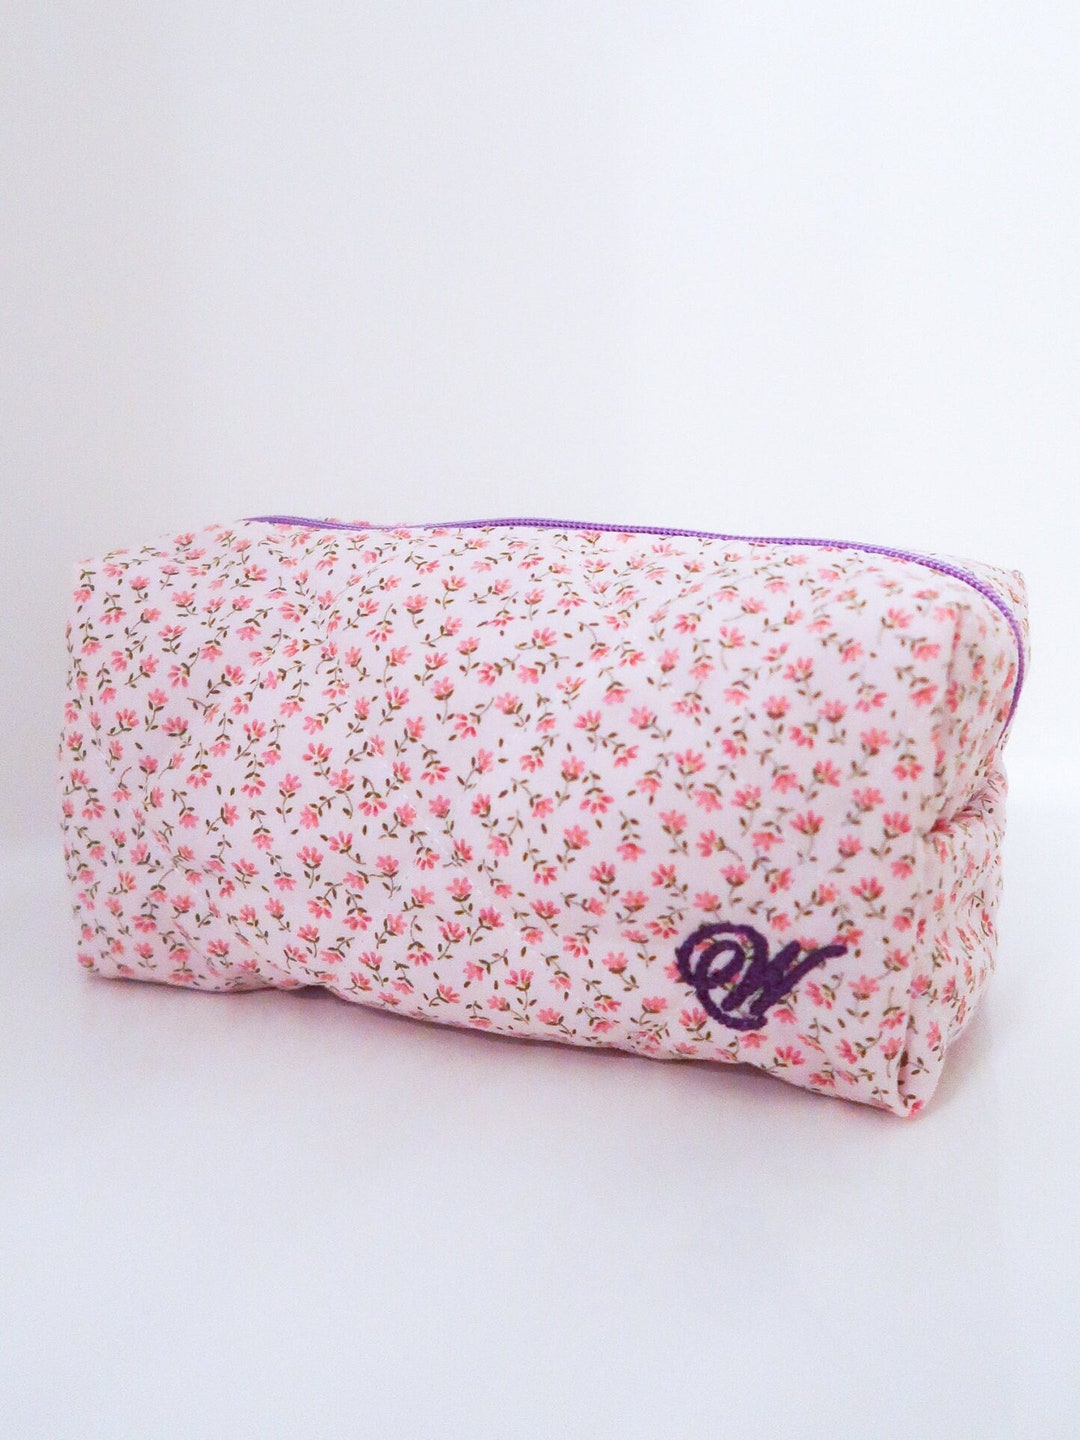 Handmade Quilted Makeup Bag / Pink Floral X Lavender Gingham / - Etsy